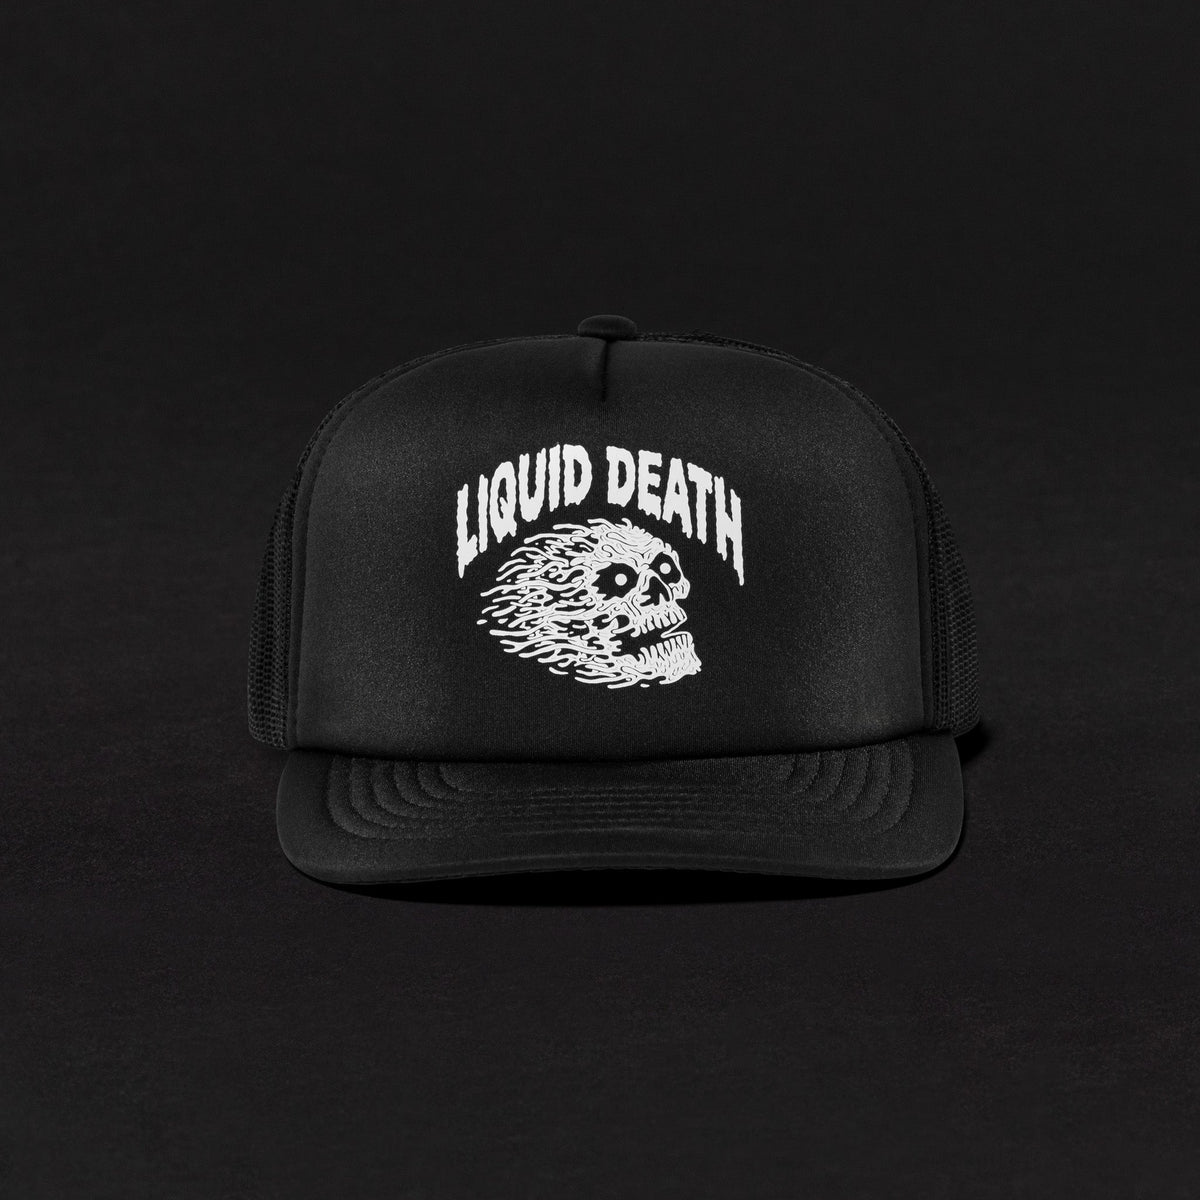 Vicious Death Hat